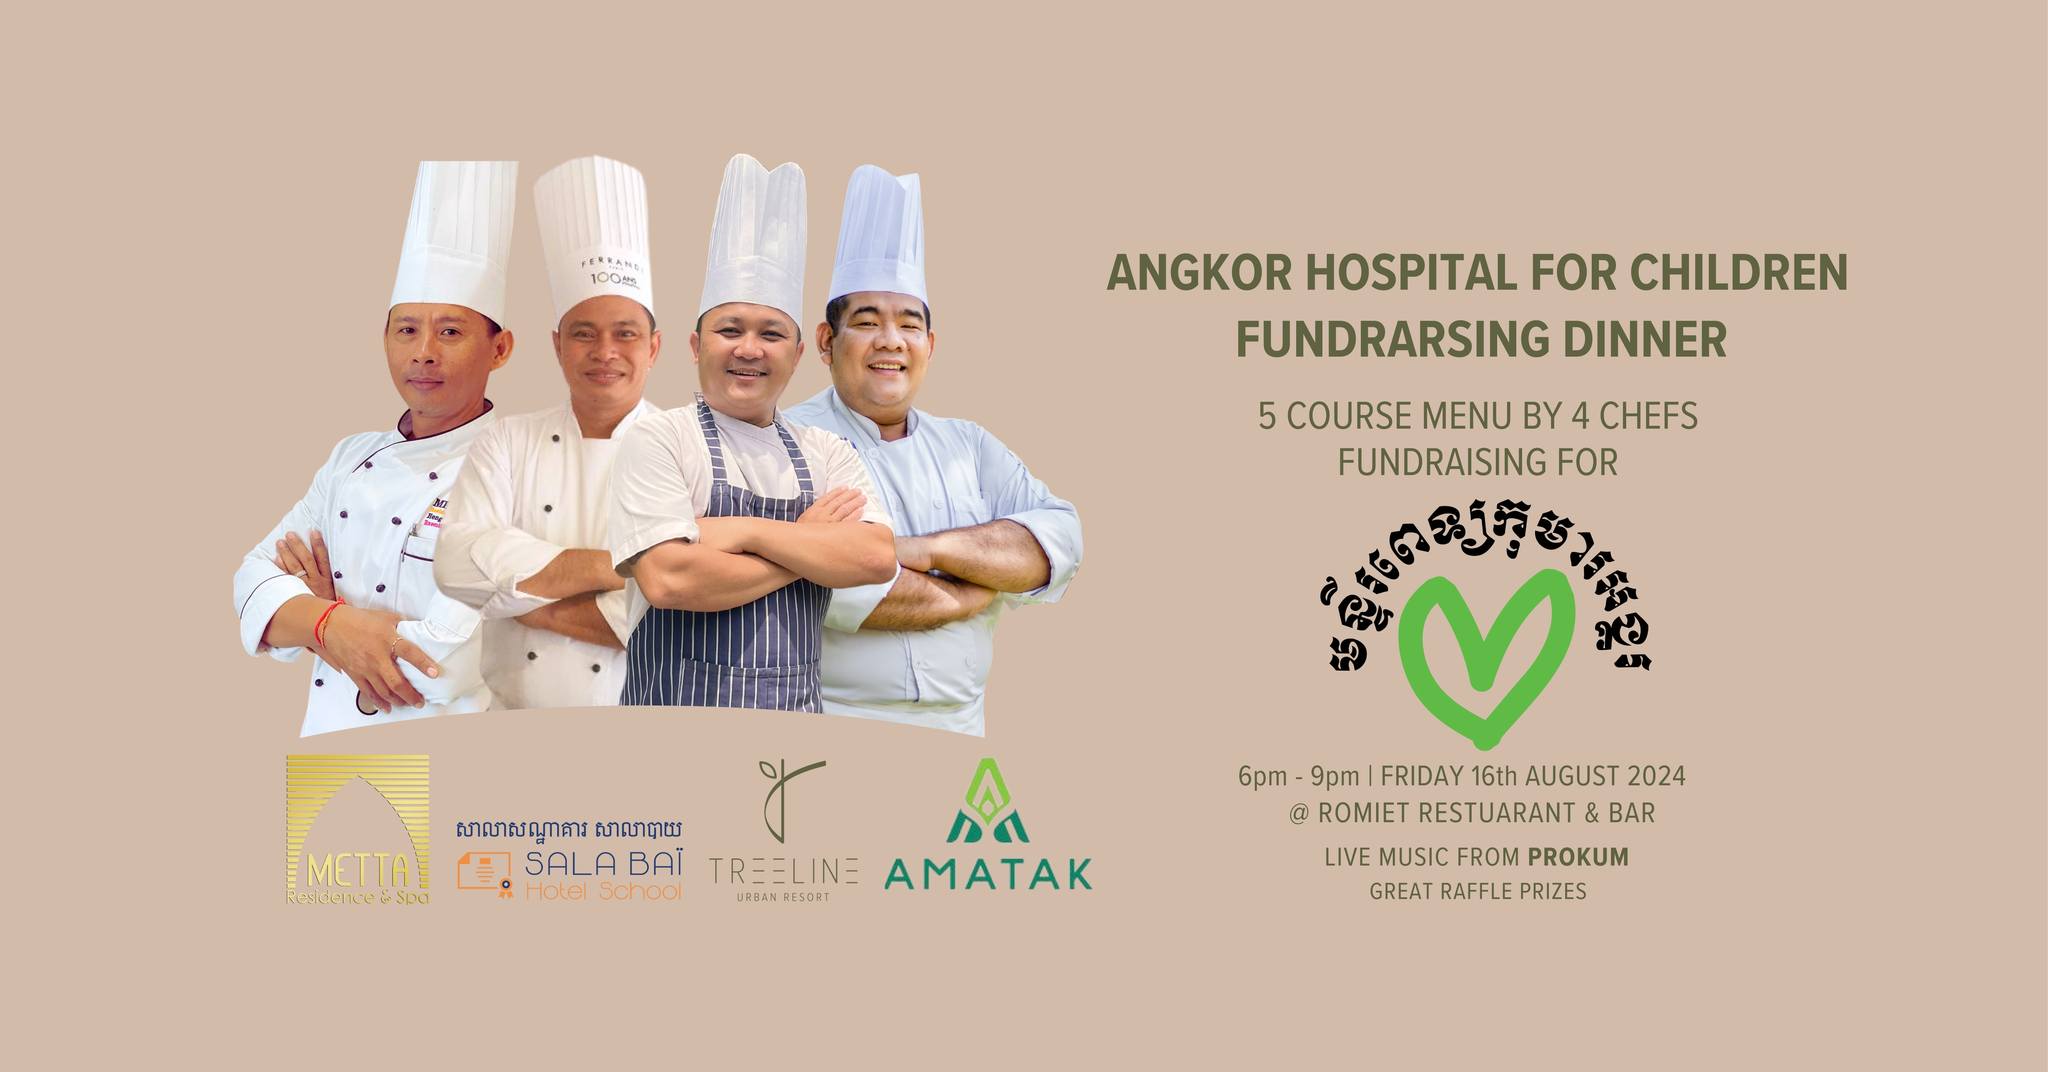 Angkor Hospital for Children Fundraising Dinner